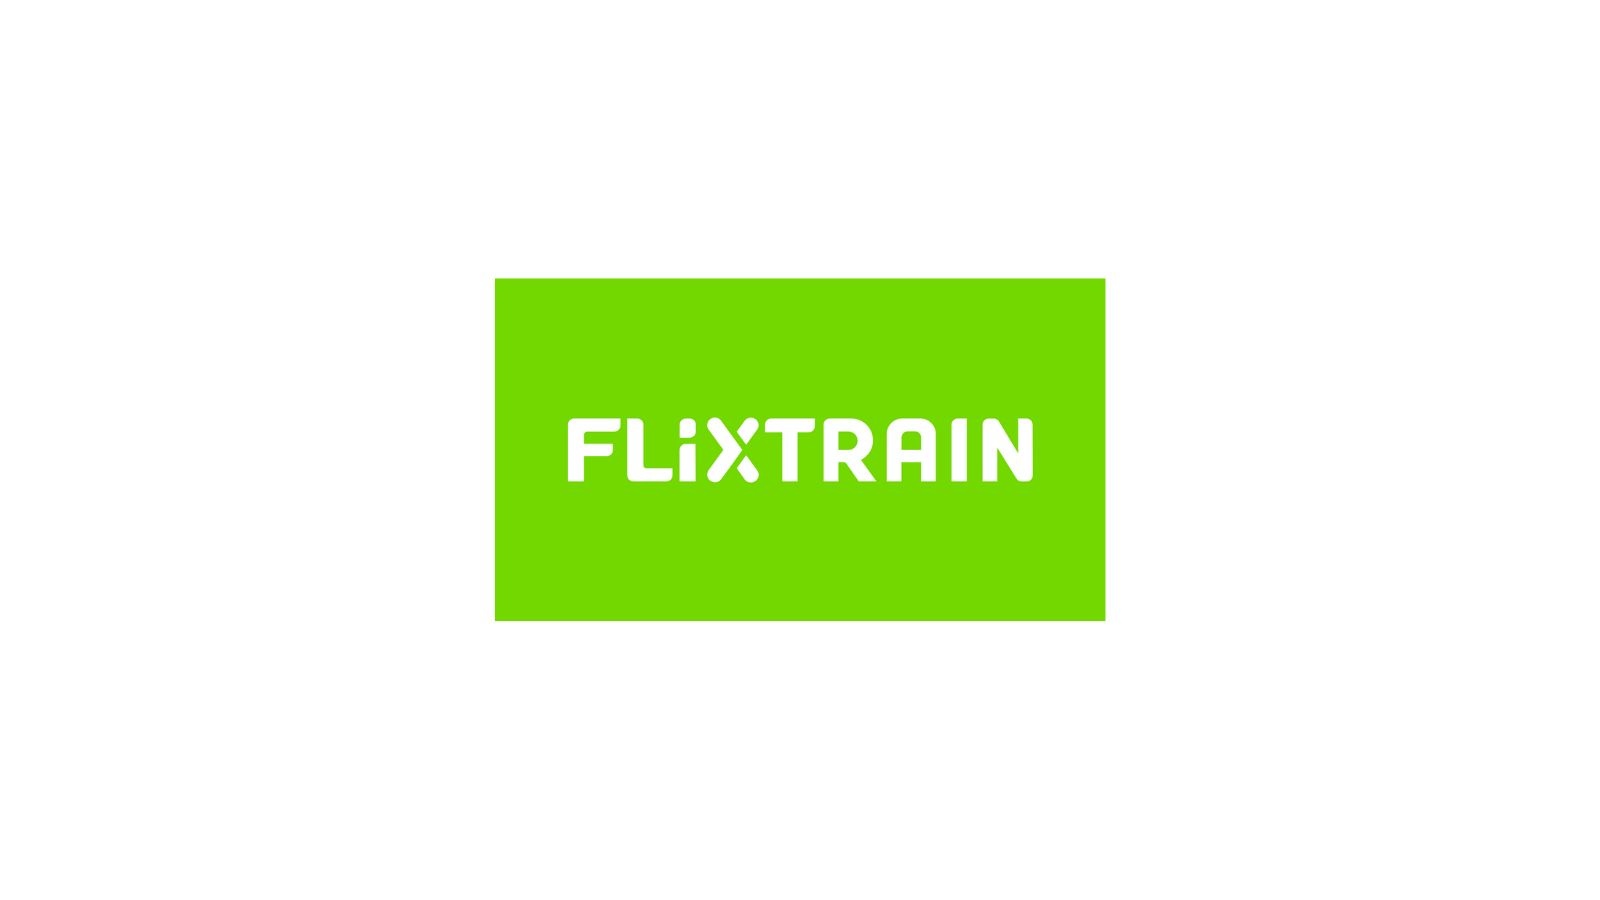 FlixTrain